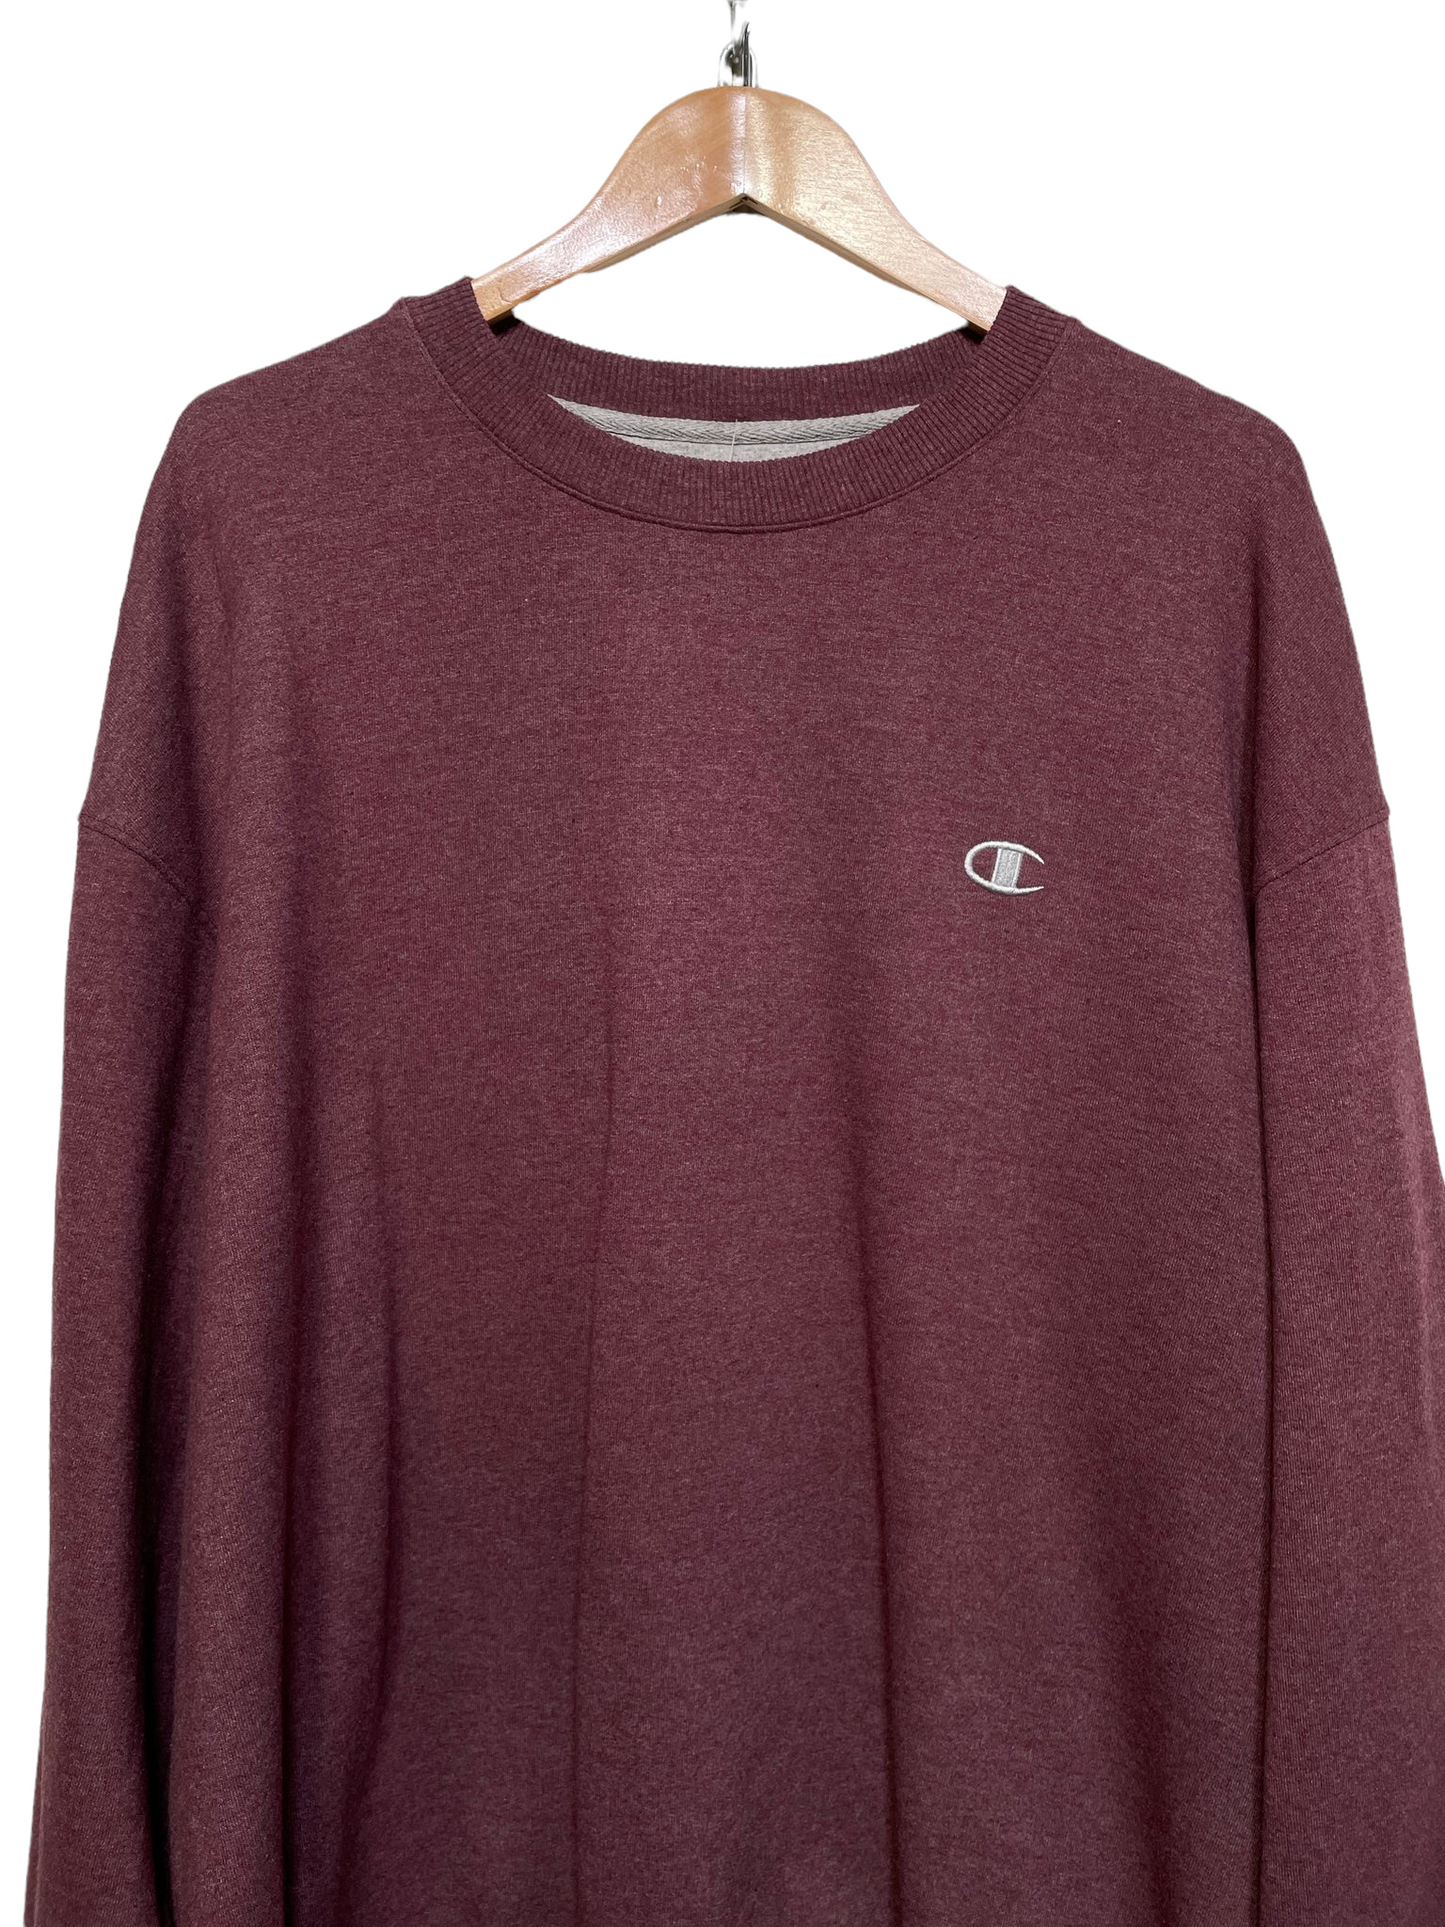 Champion Purple Sweatshirt (Size 2XL)